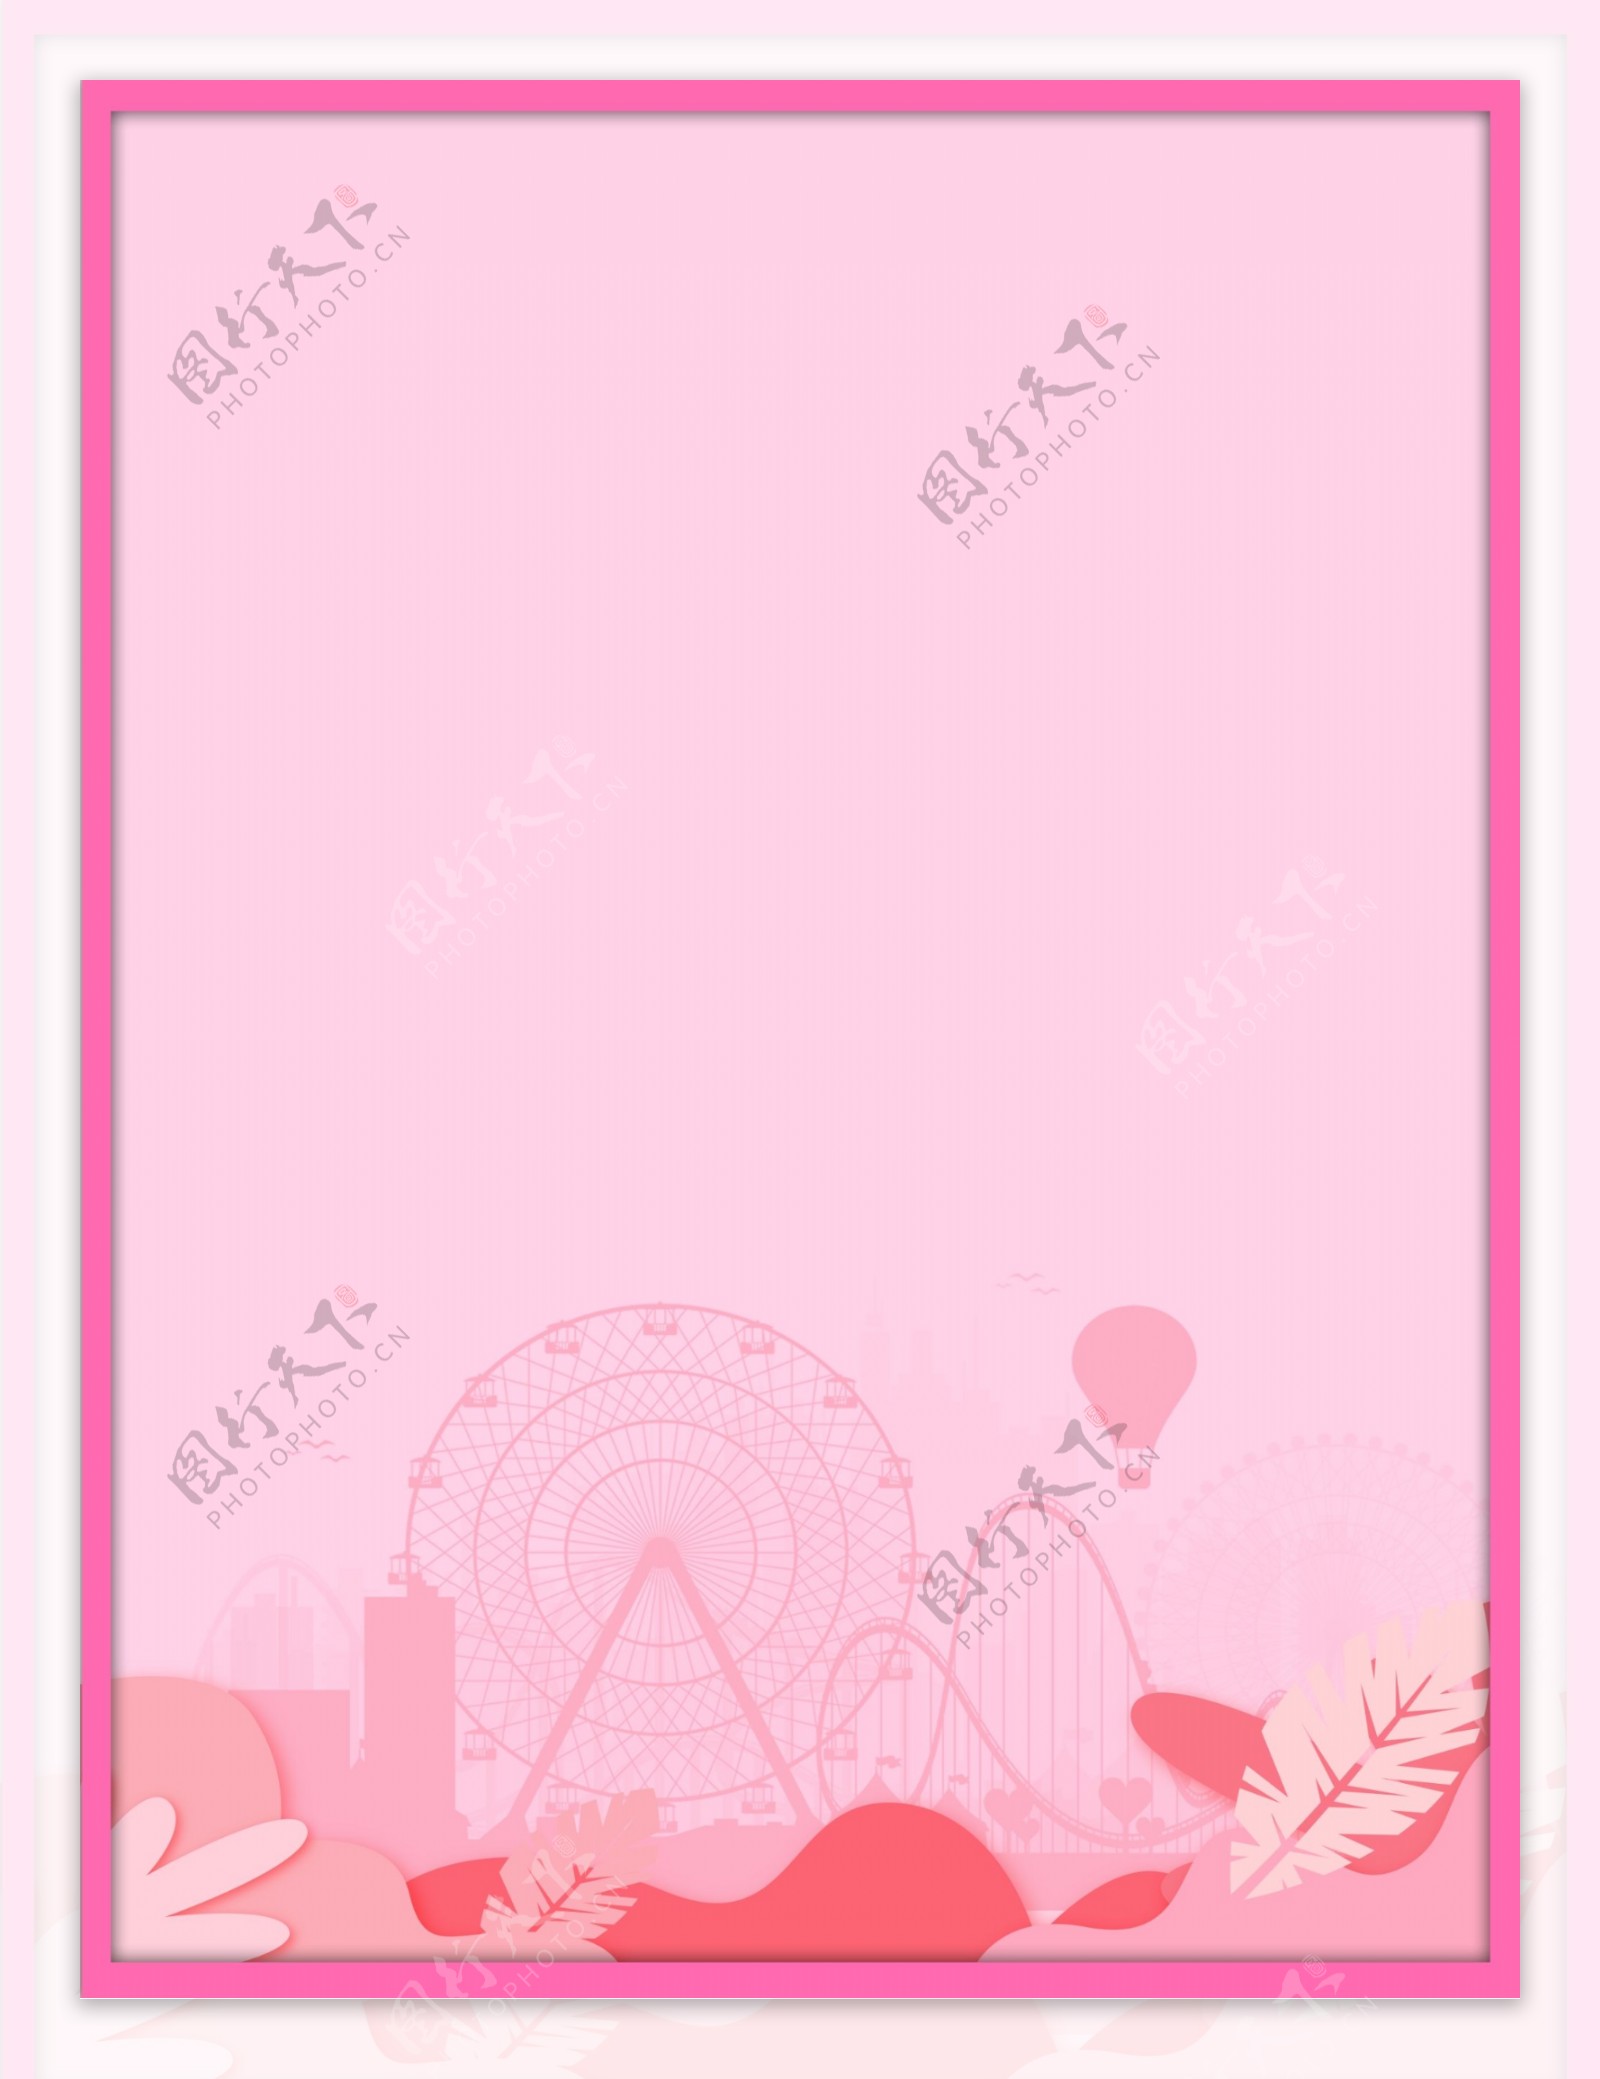 粉红色摩天轮半透明背景素材